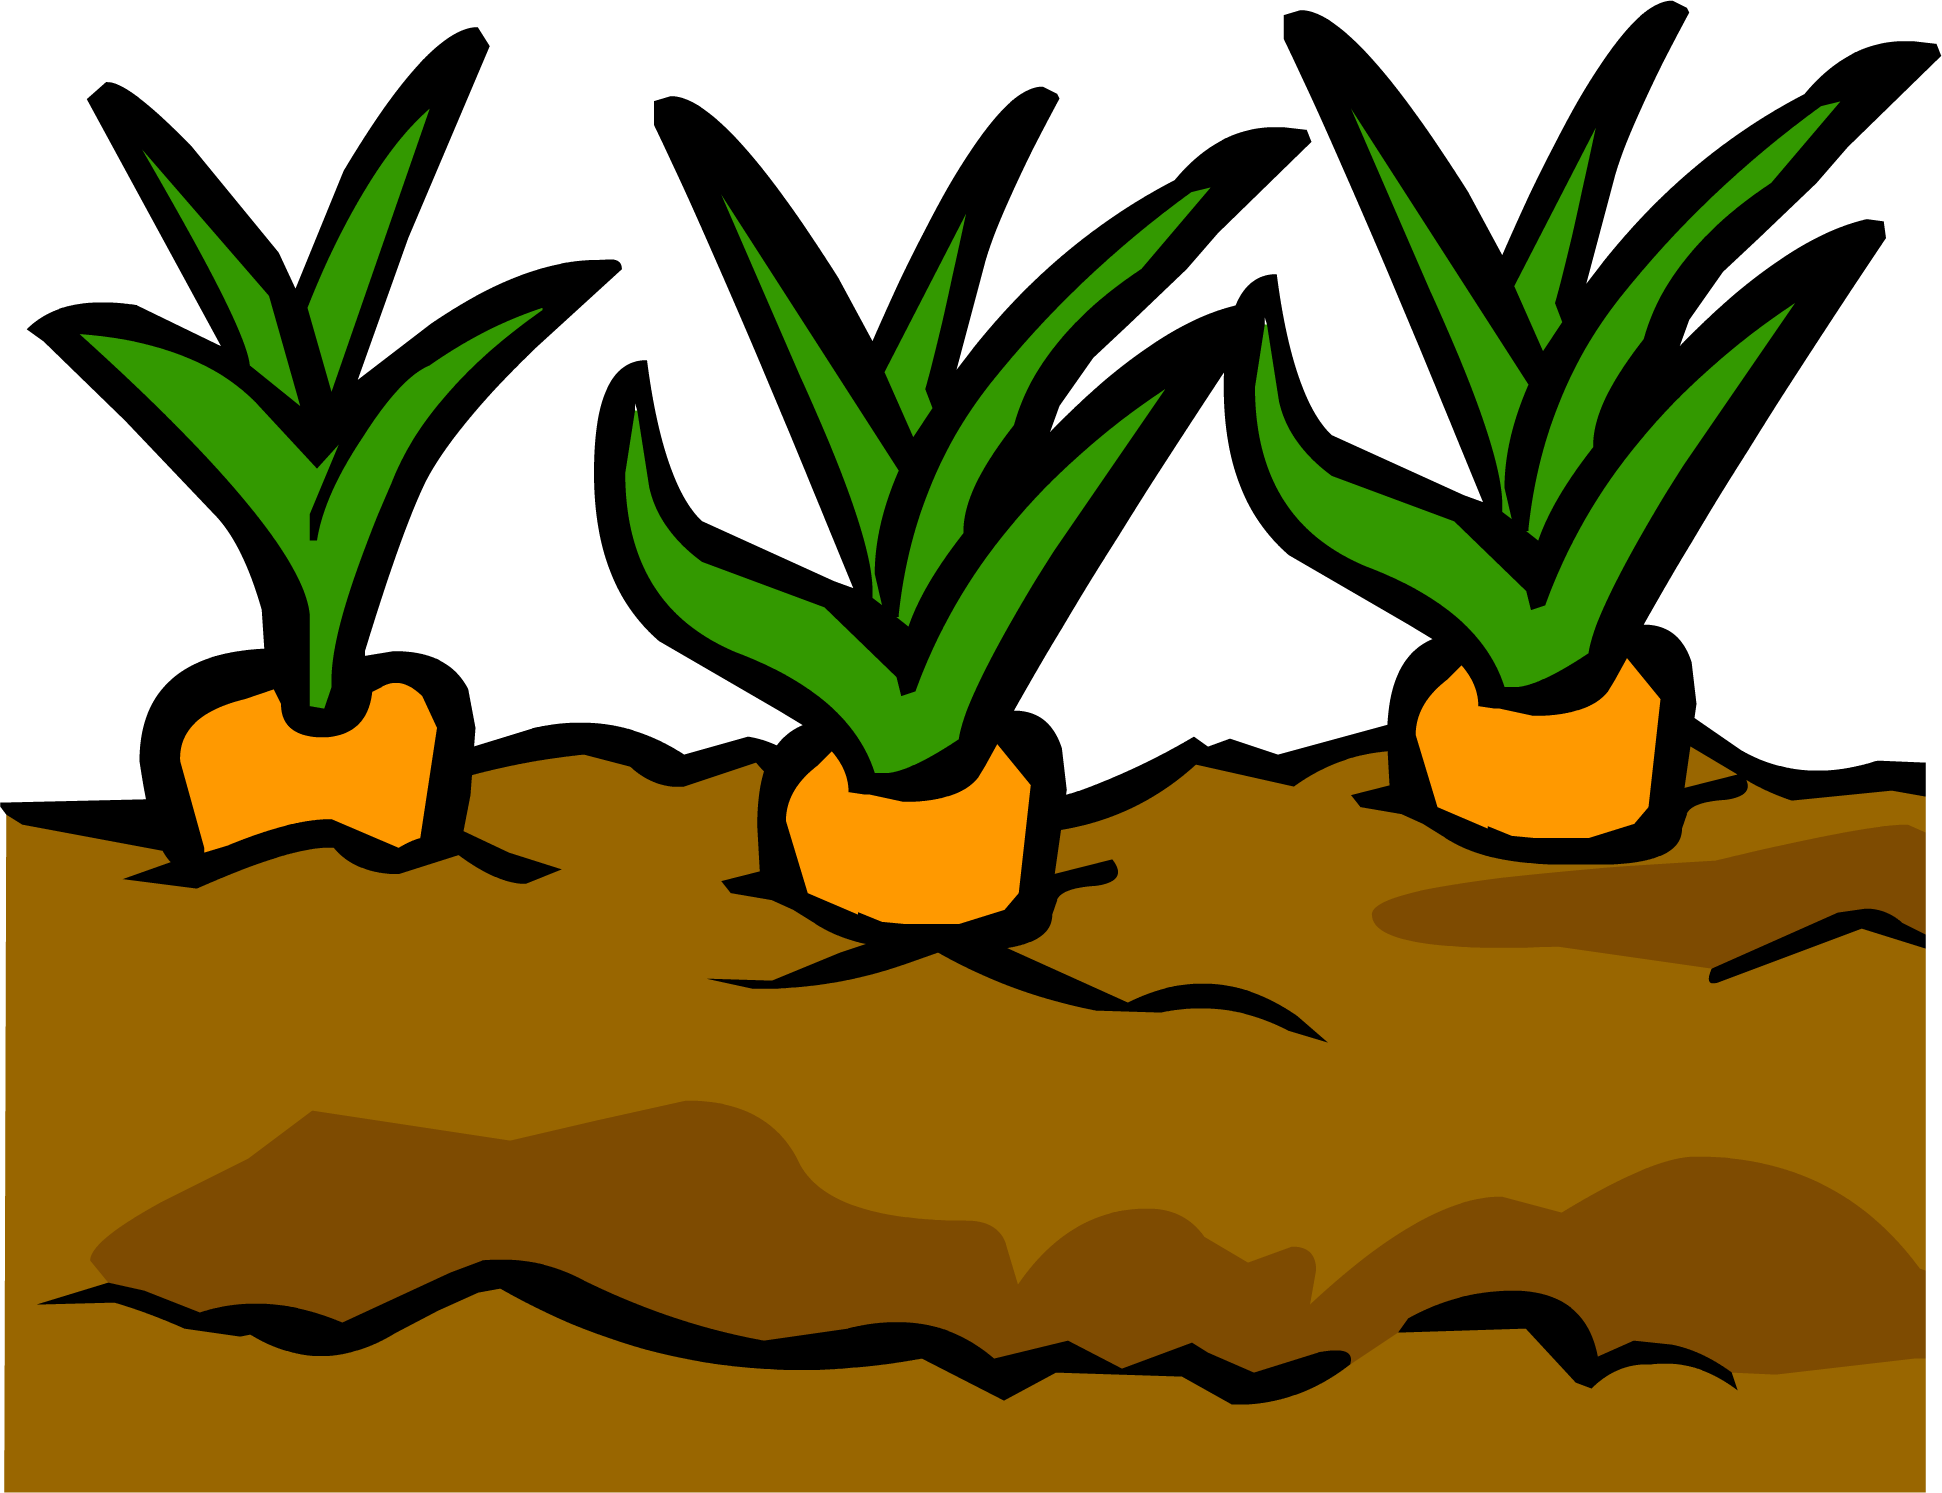 Dirt clipart garden soil, Dirt garden soil Transparent FREE